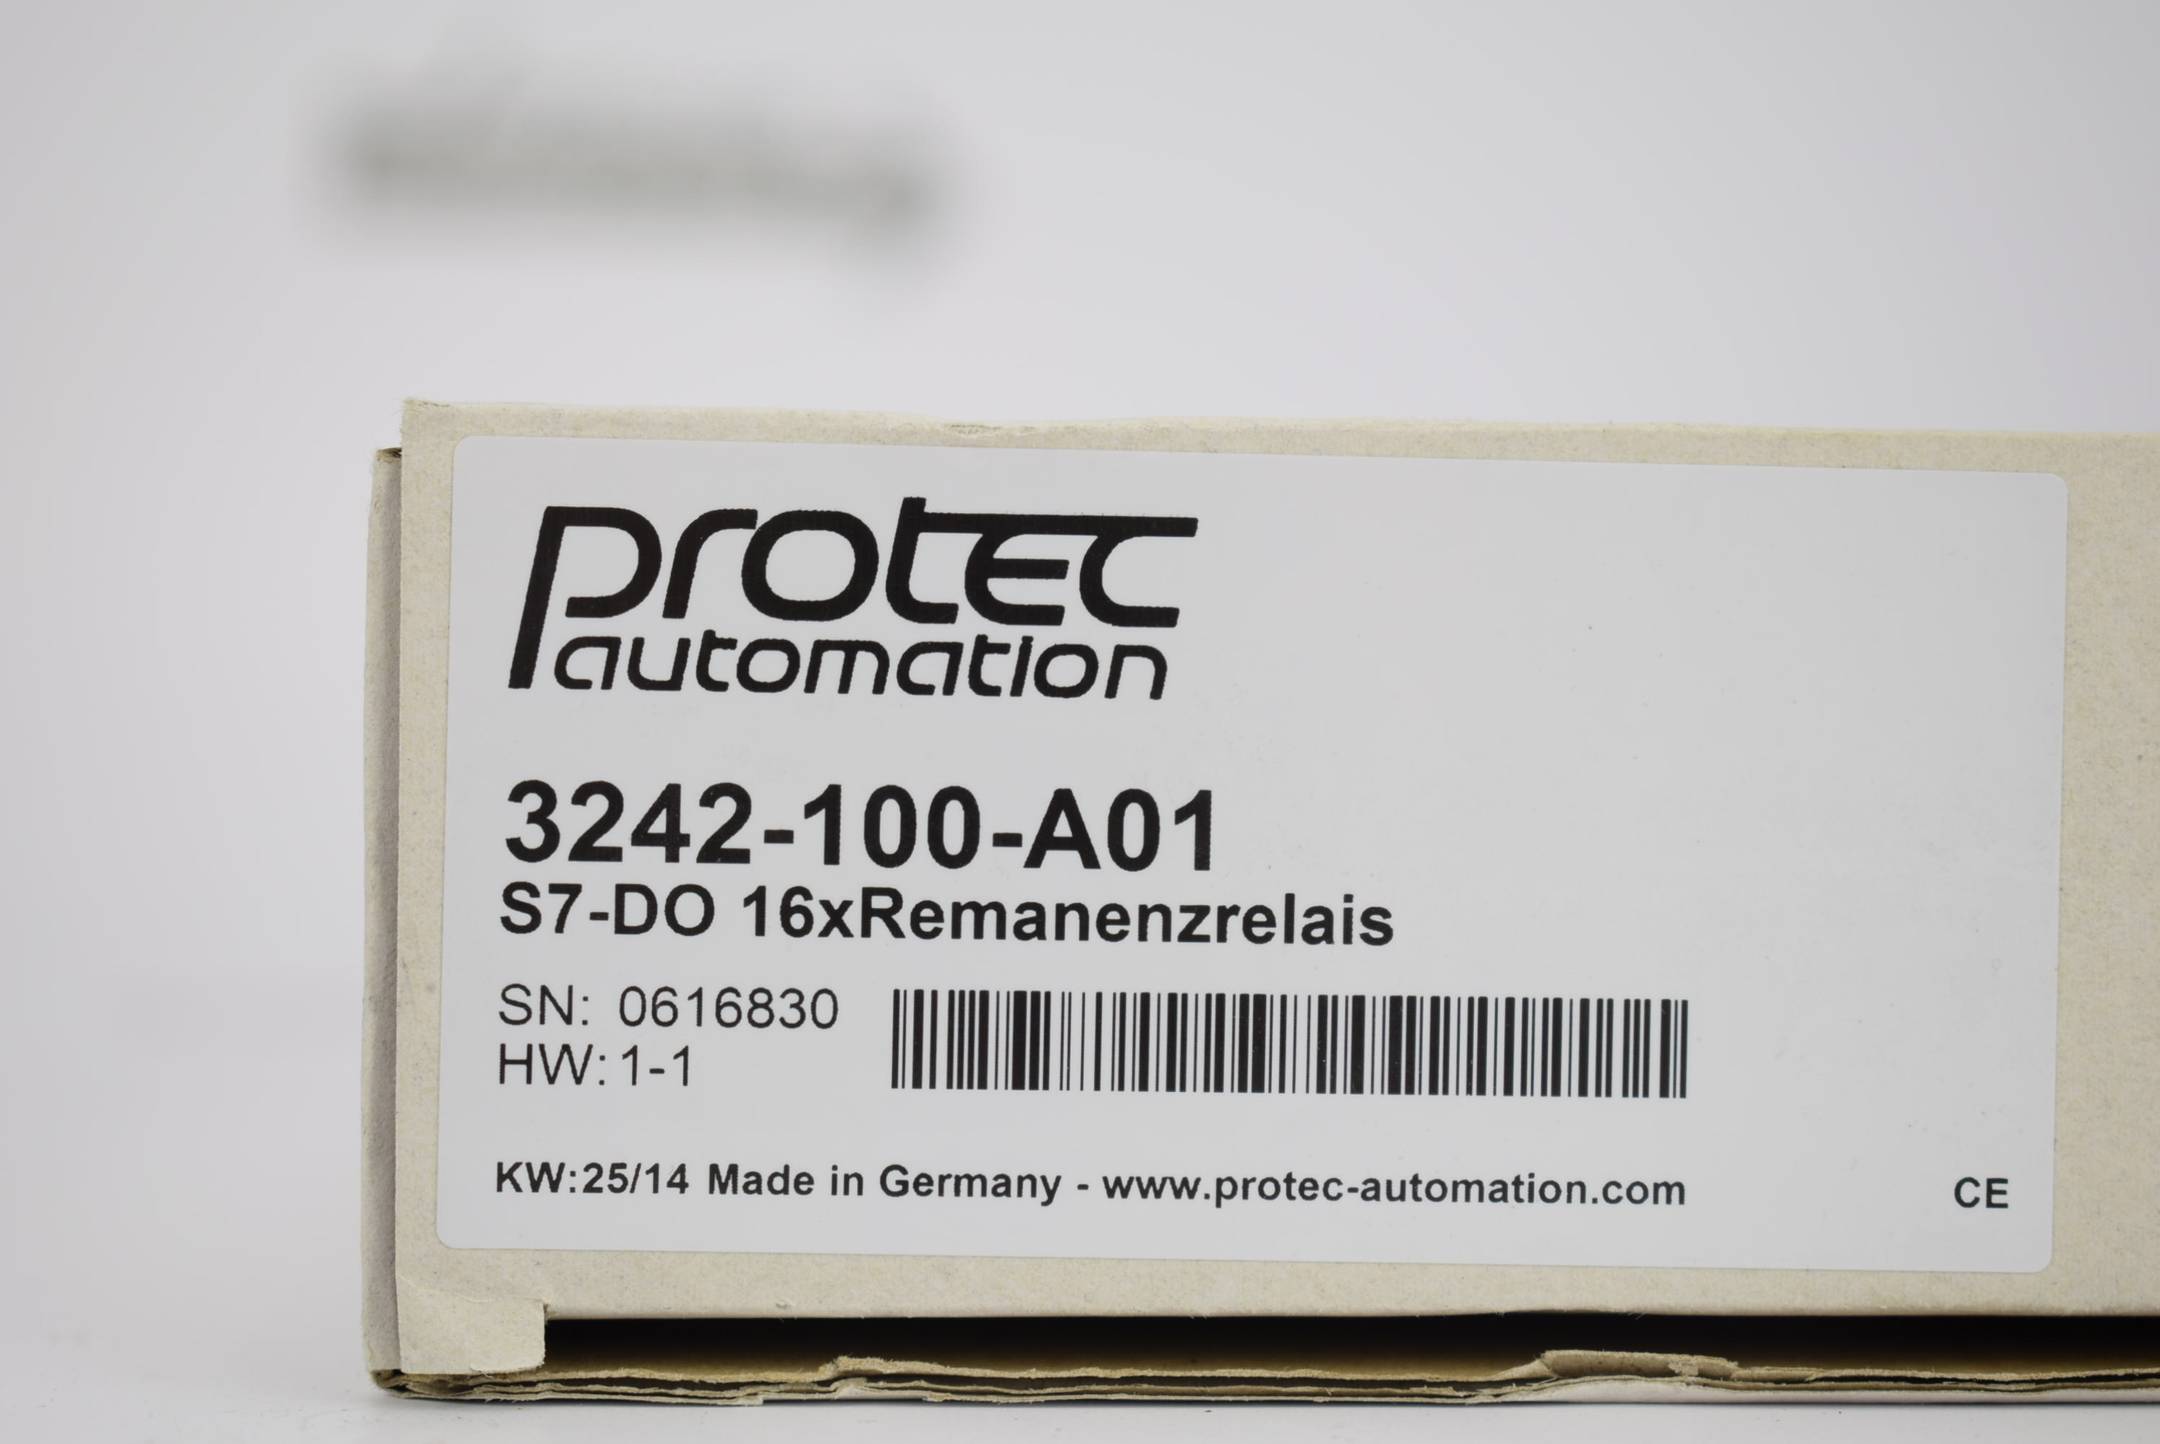 Protec Automation S7-DO 16x Remanenzrelais 3242-100-A01